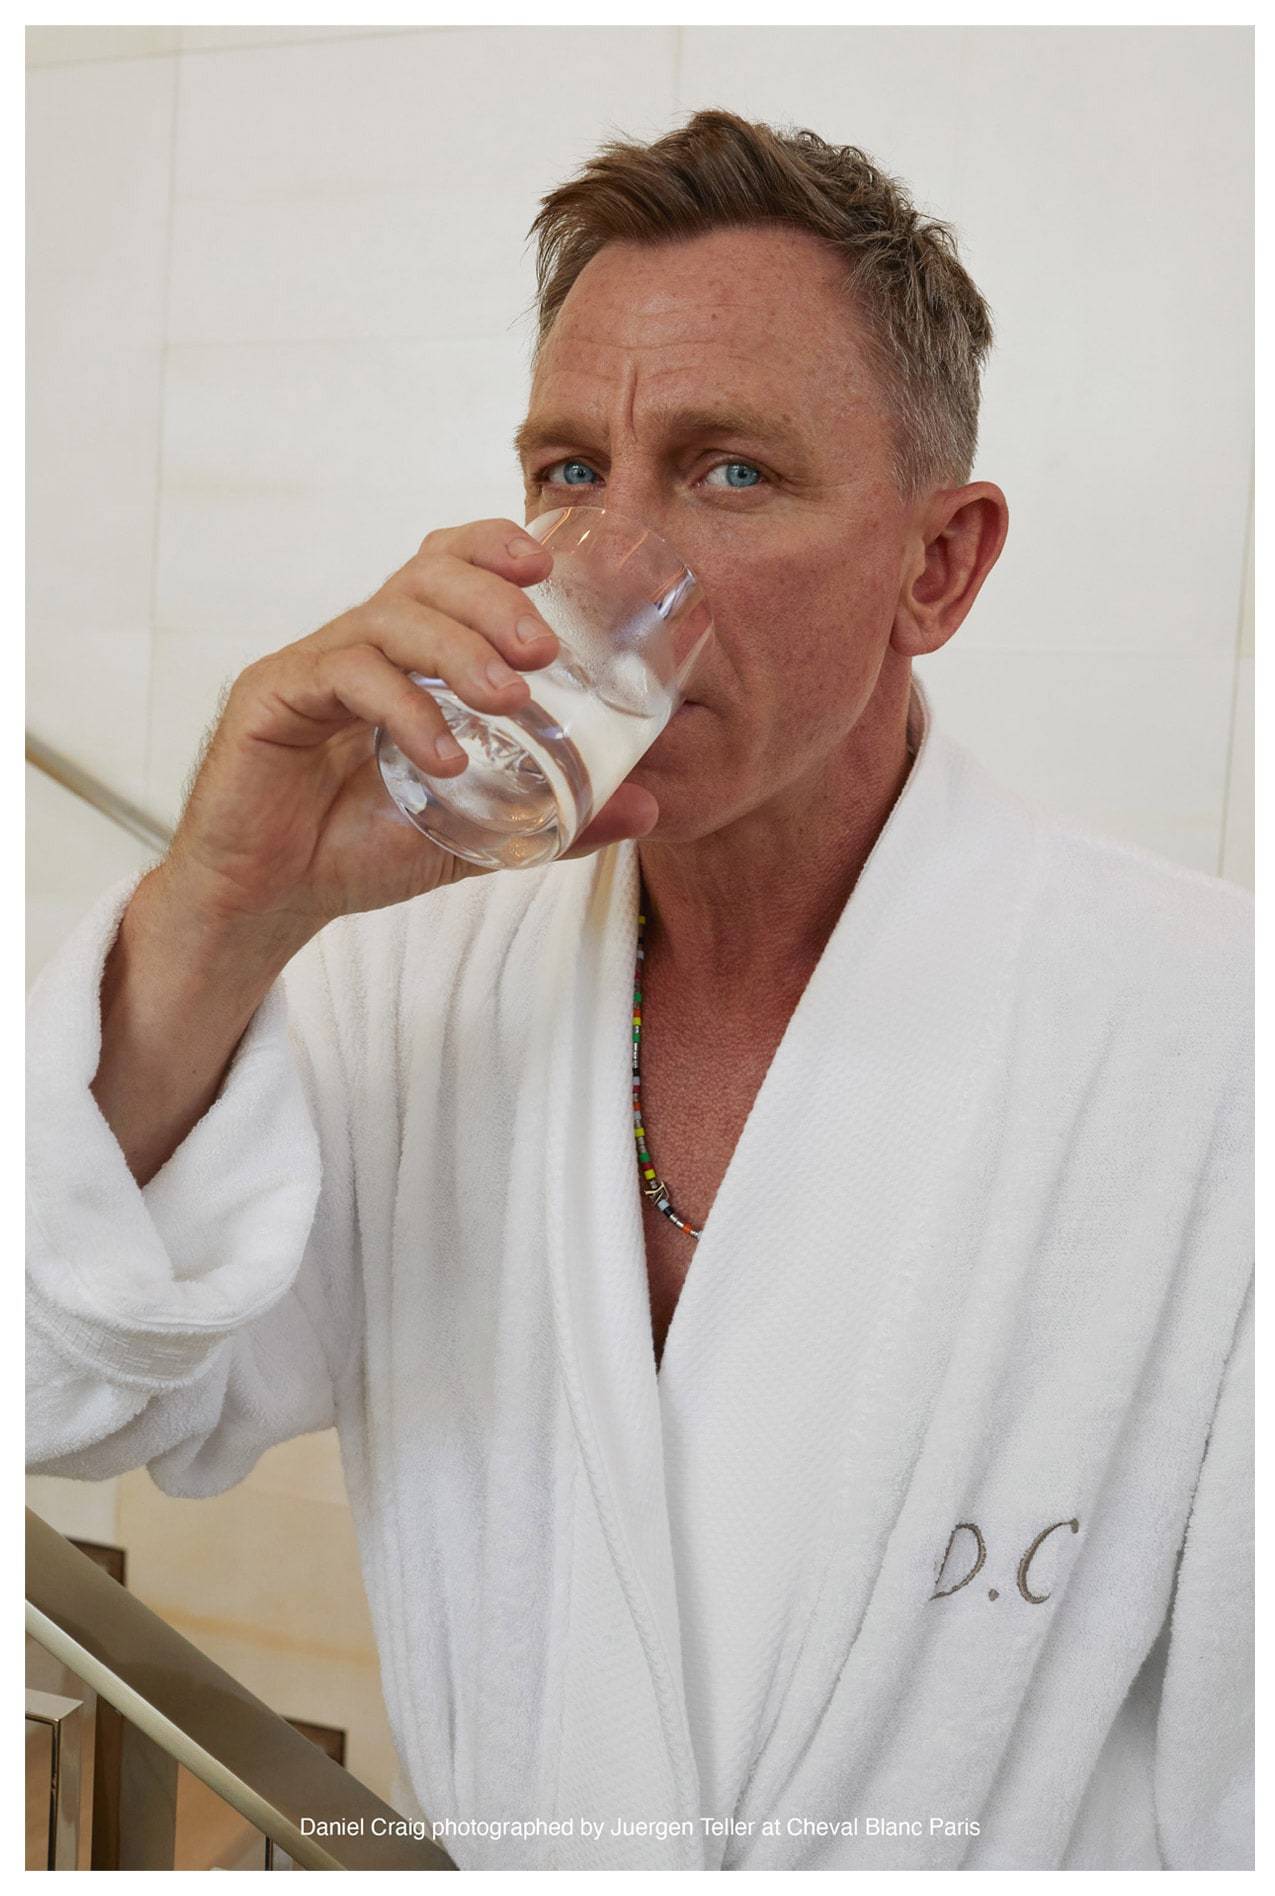 Daniel Craig drinking